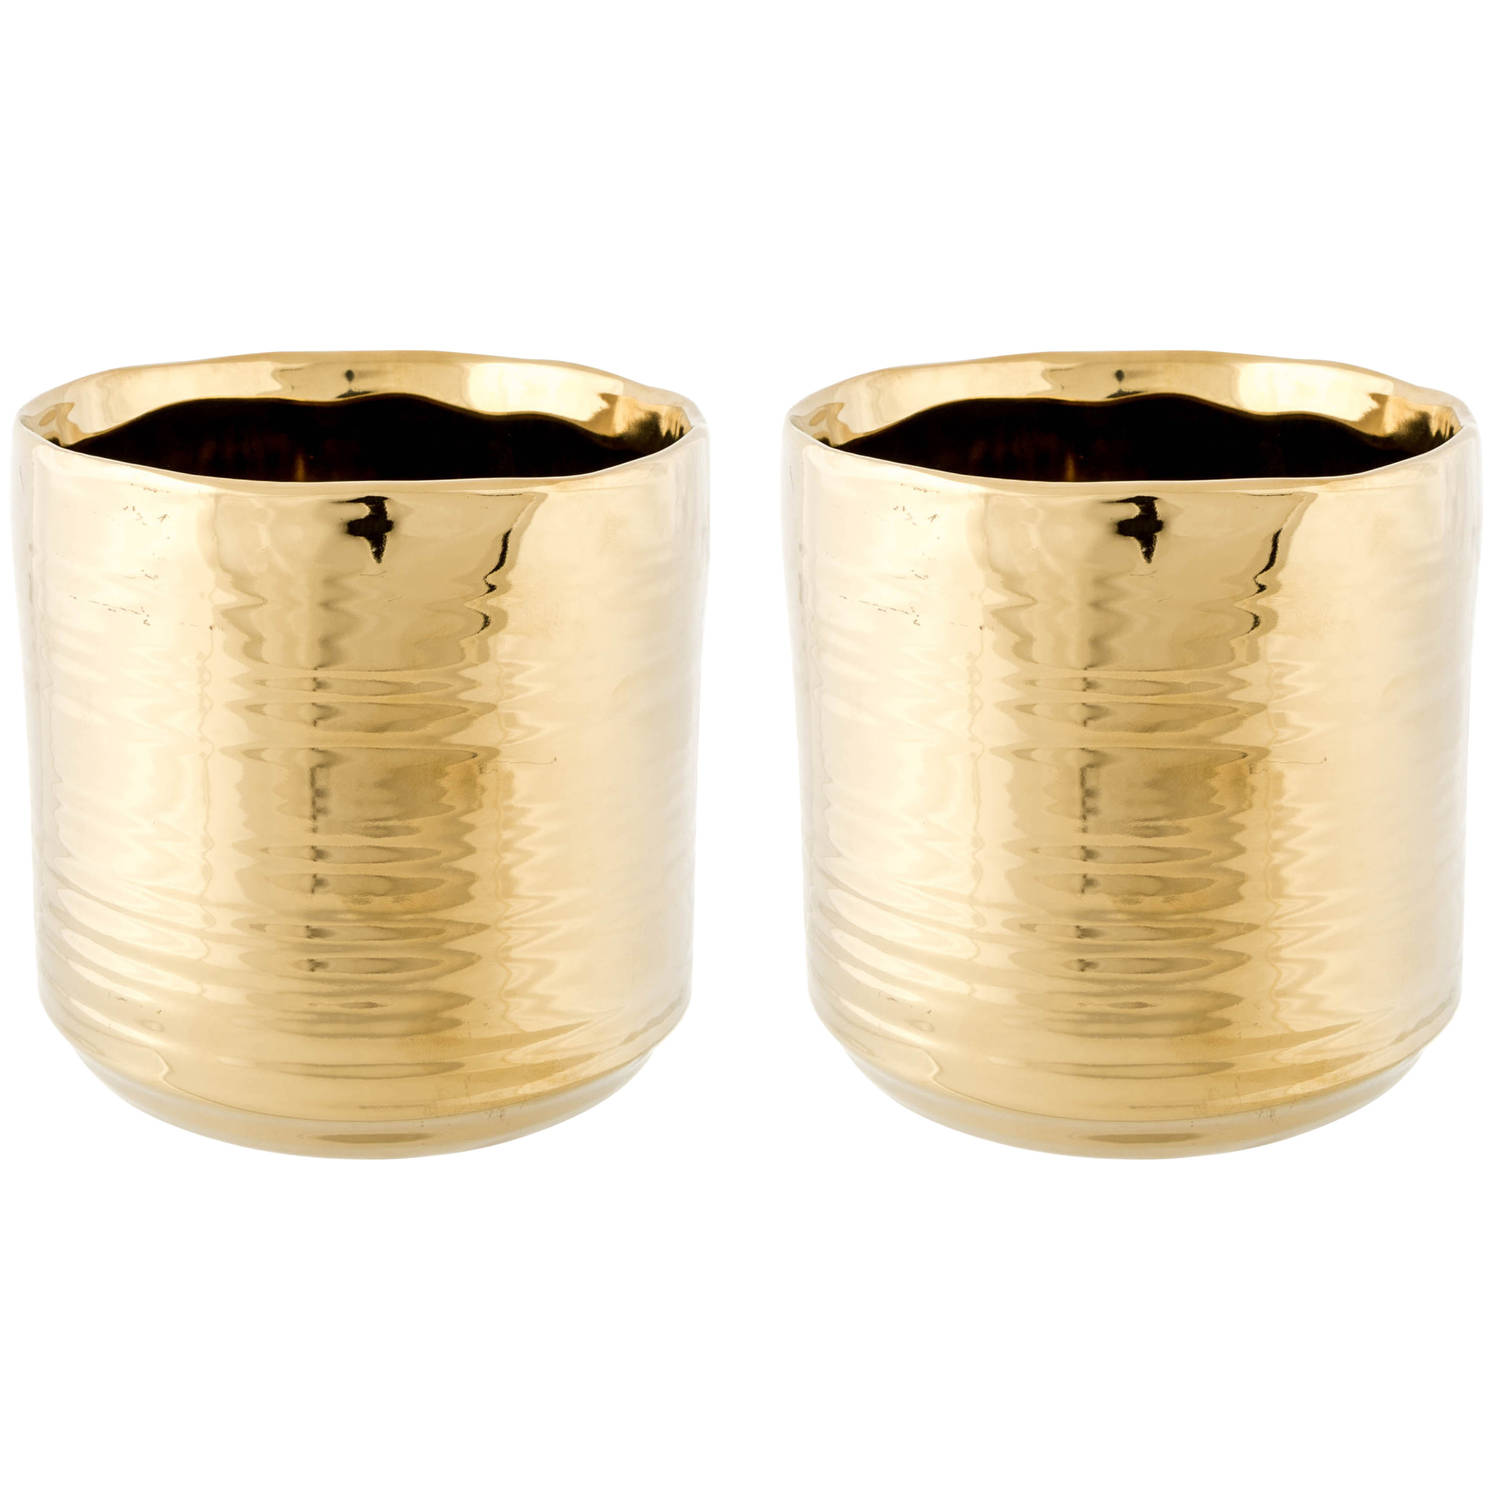 2x Gouden Ronde Plantenpotten-bloempotten Cerchio 11 Cm Keramiek Plantenpot-bloempot Metallic Goud W